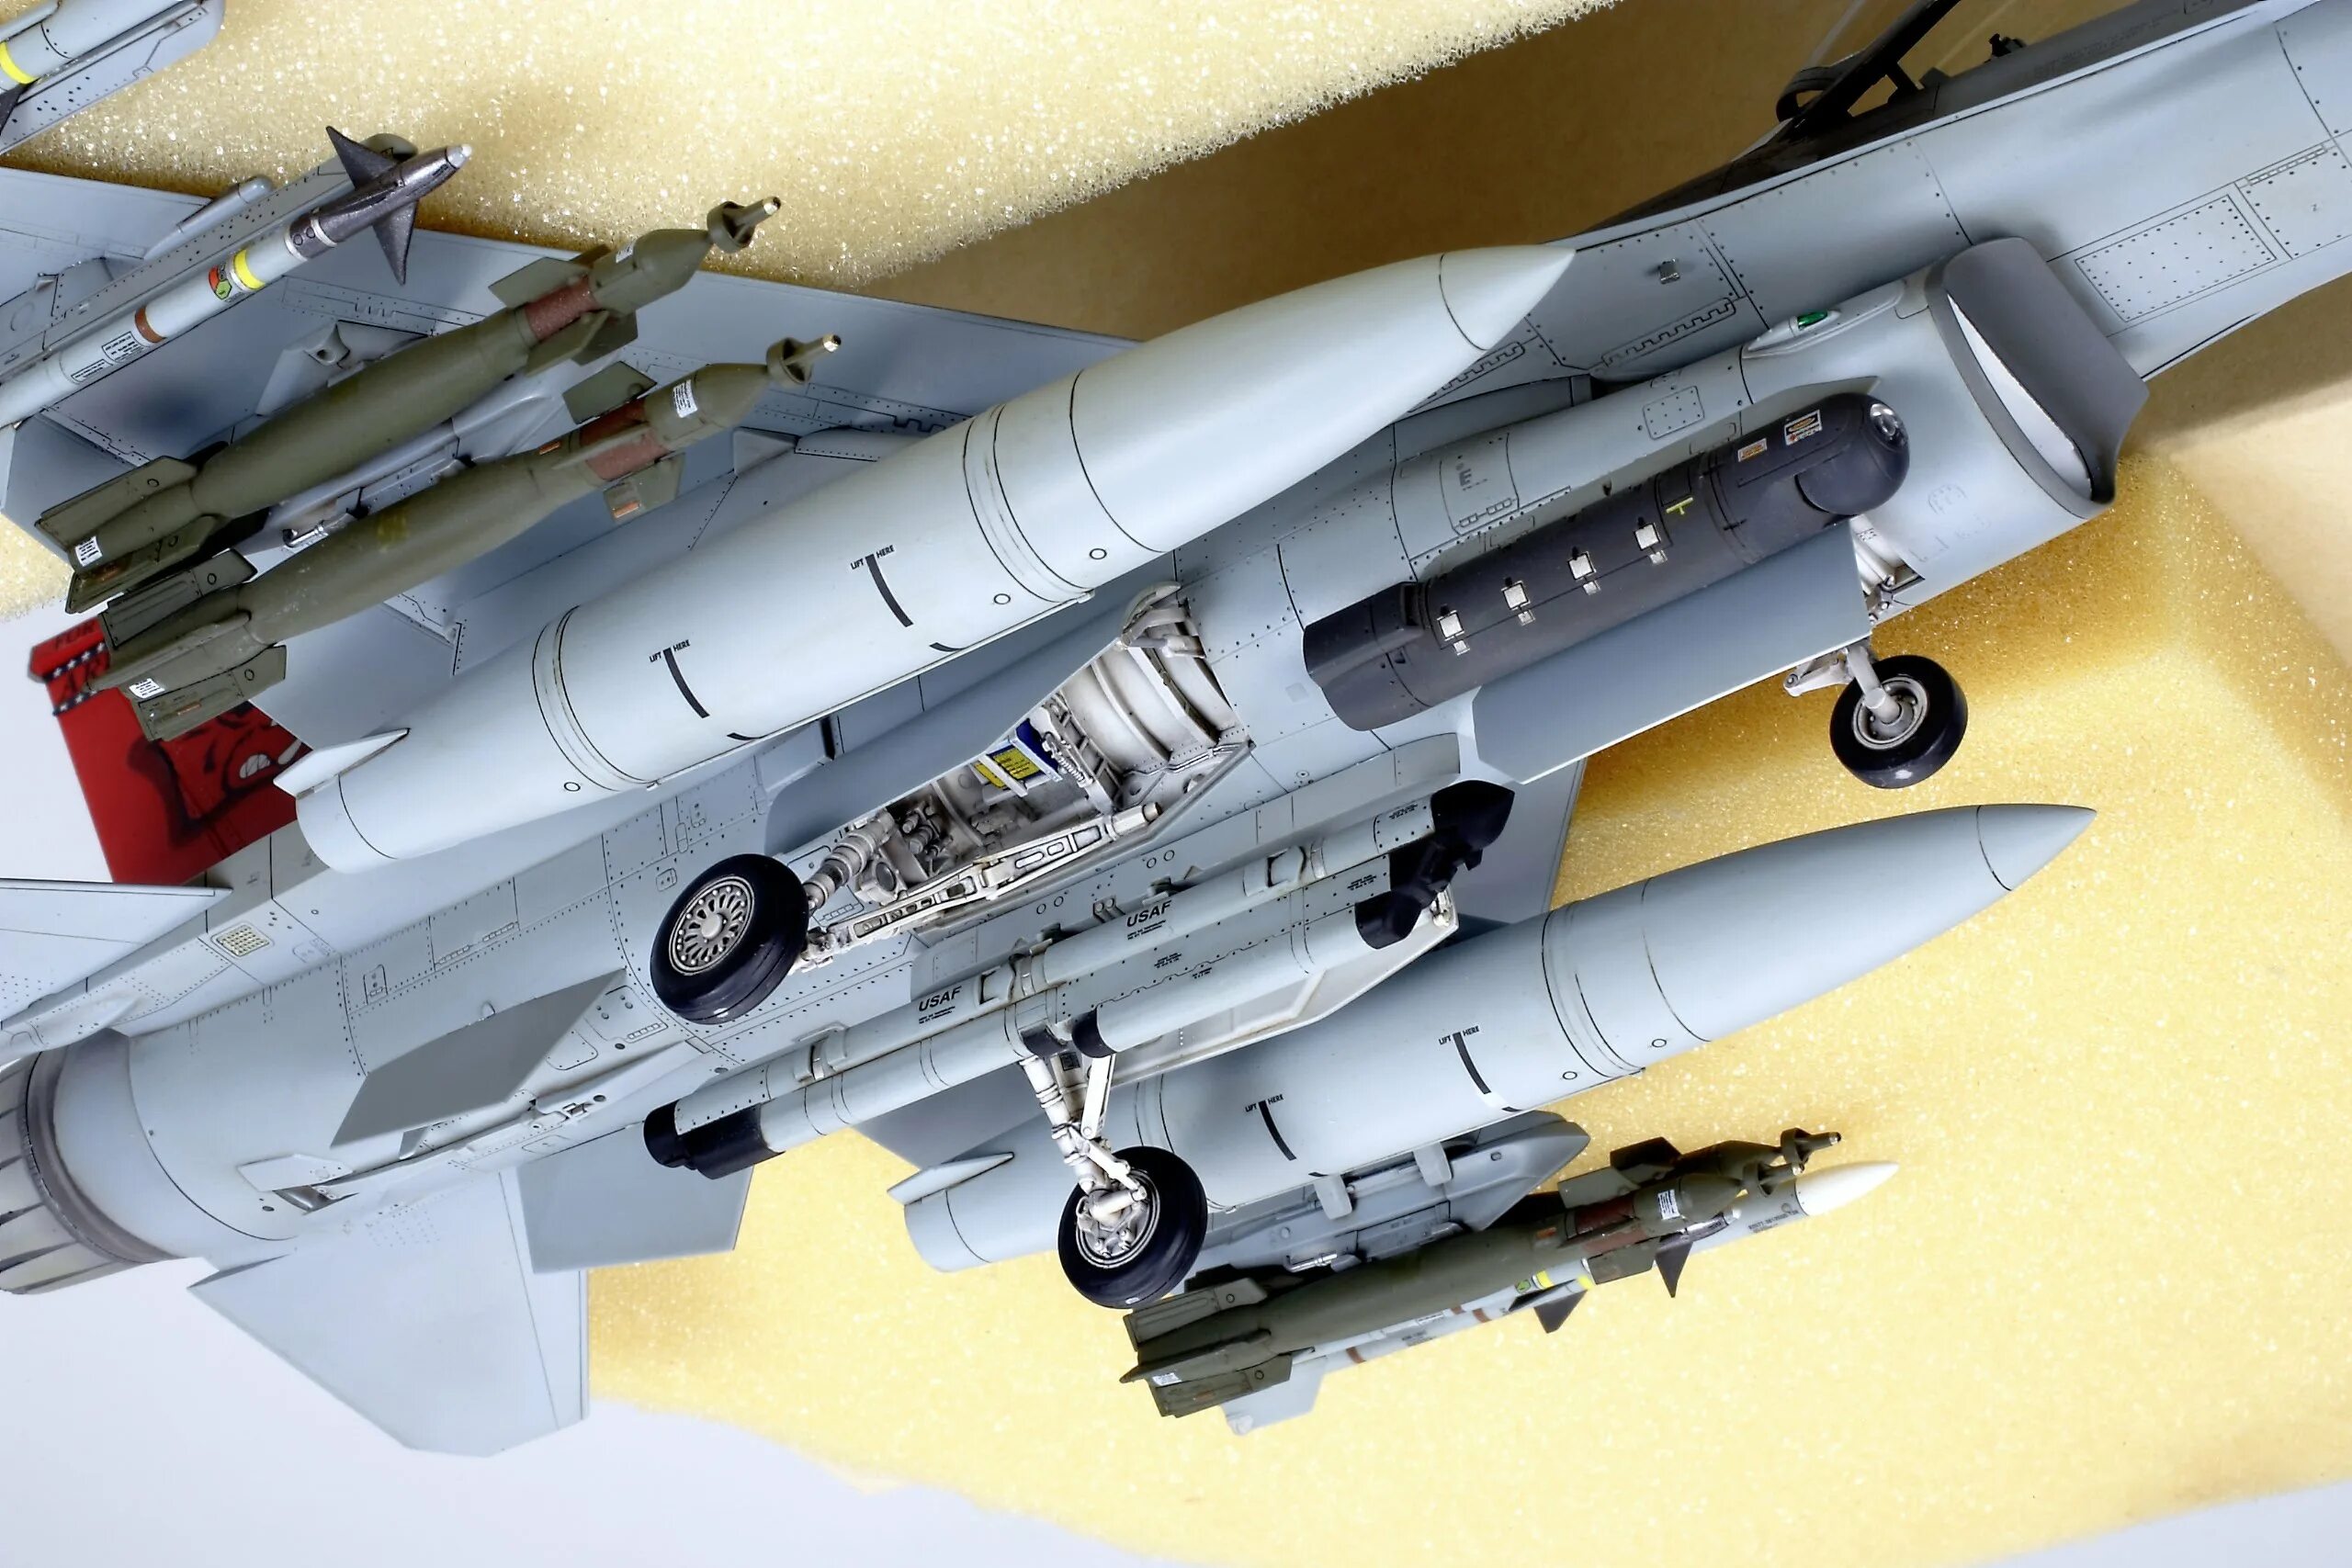 F 1 48. F-16 Tamiya 61101. F-16c Tamiya 1/48. F-16 1/48 Tamiya 61101. Tamiya 61101 f-16c (Block 25/32) 1/48.